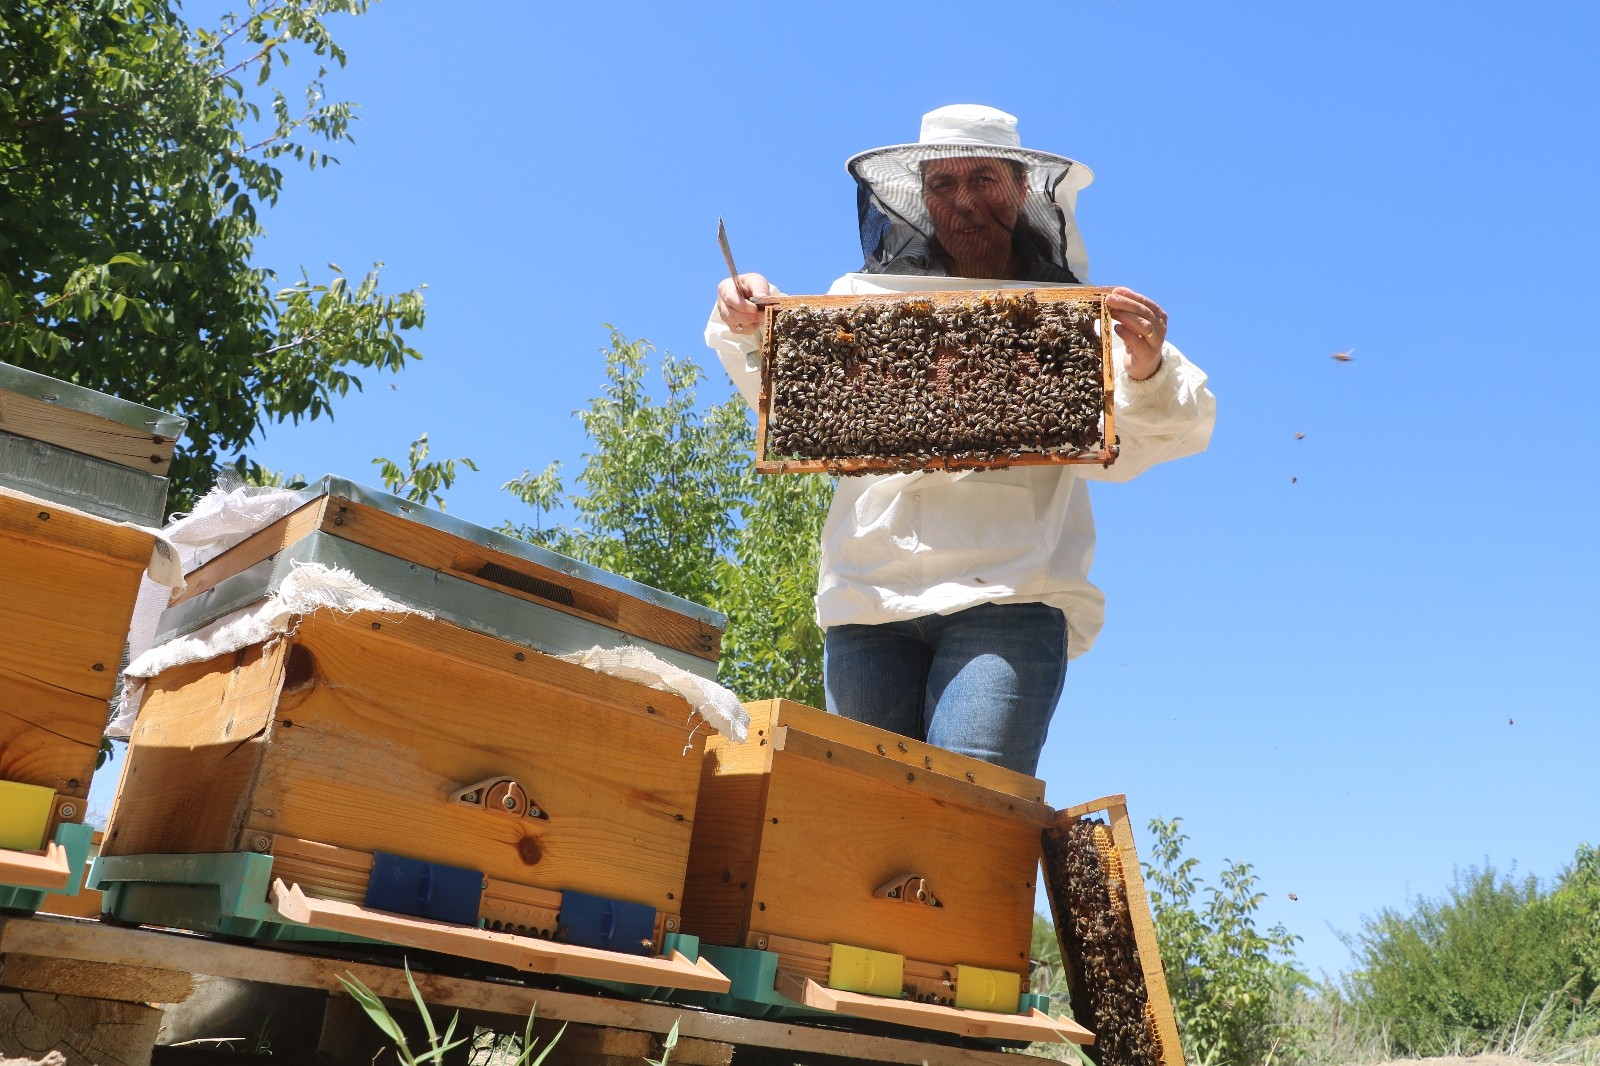 Bilim insanından arı ölümlerine karşı kış öncesi besin takviyesi uyarısı